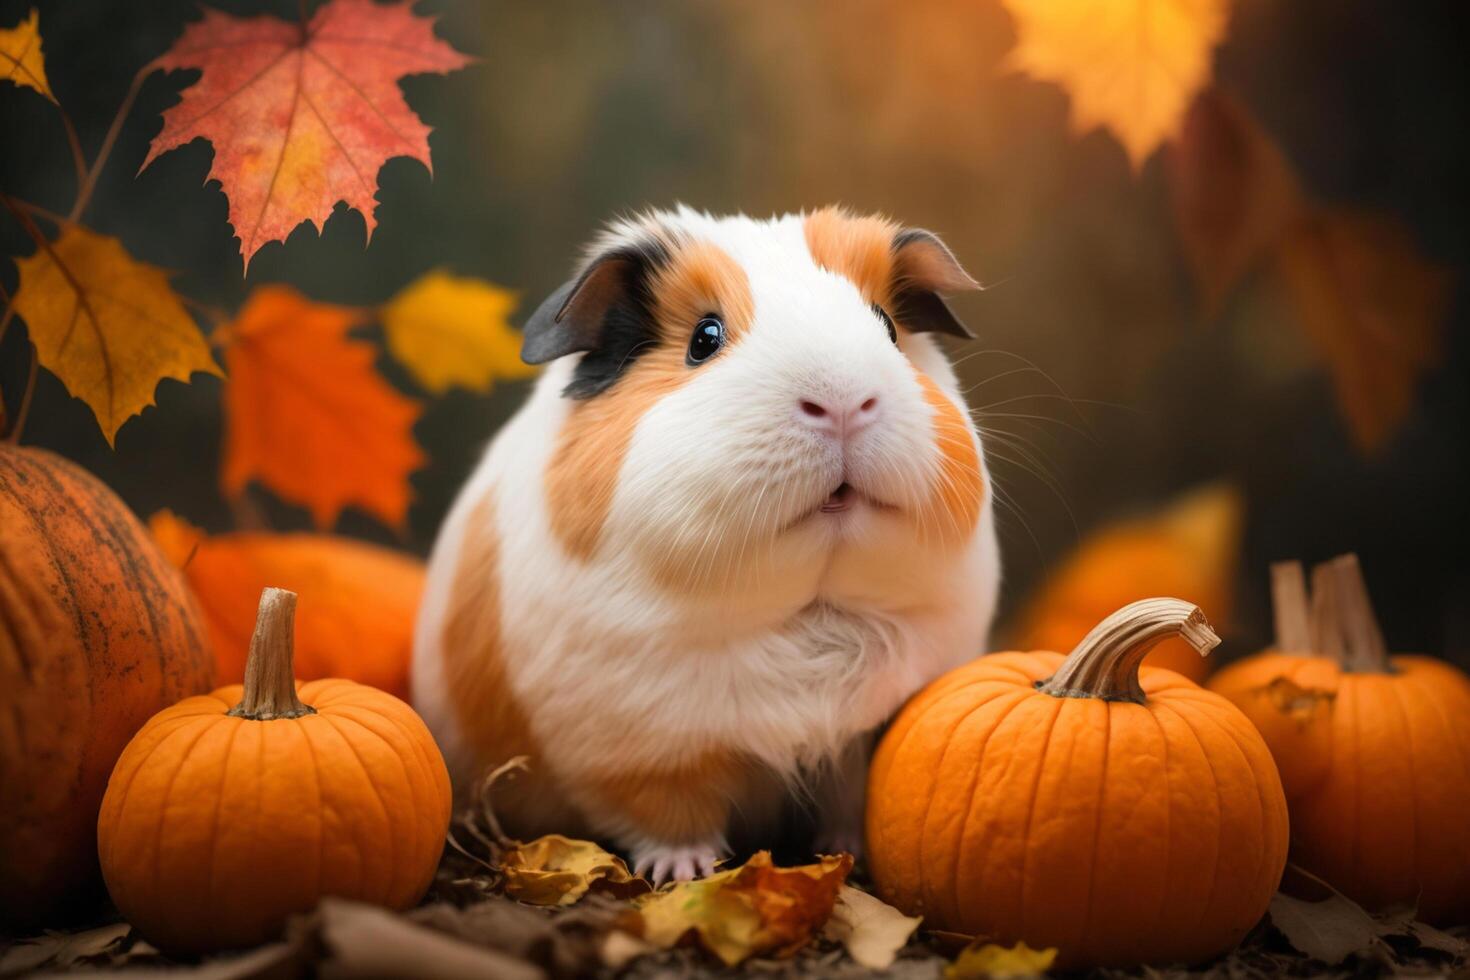 Funny guinea pig sits between pumpkins photo